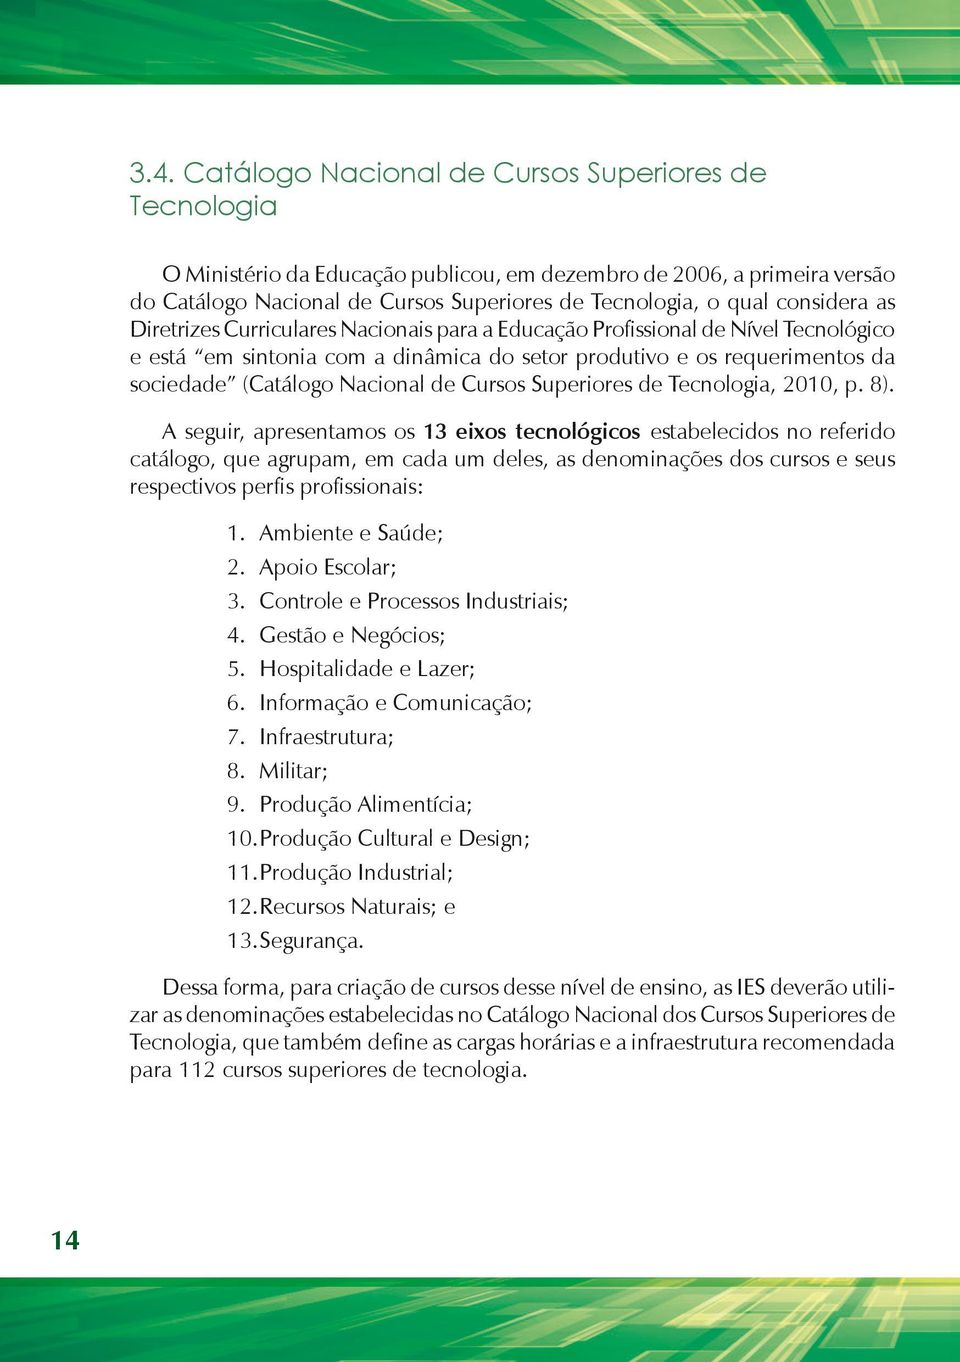 Nacional de Cursos Superiores de Tecnologia, 2010, p. 8).